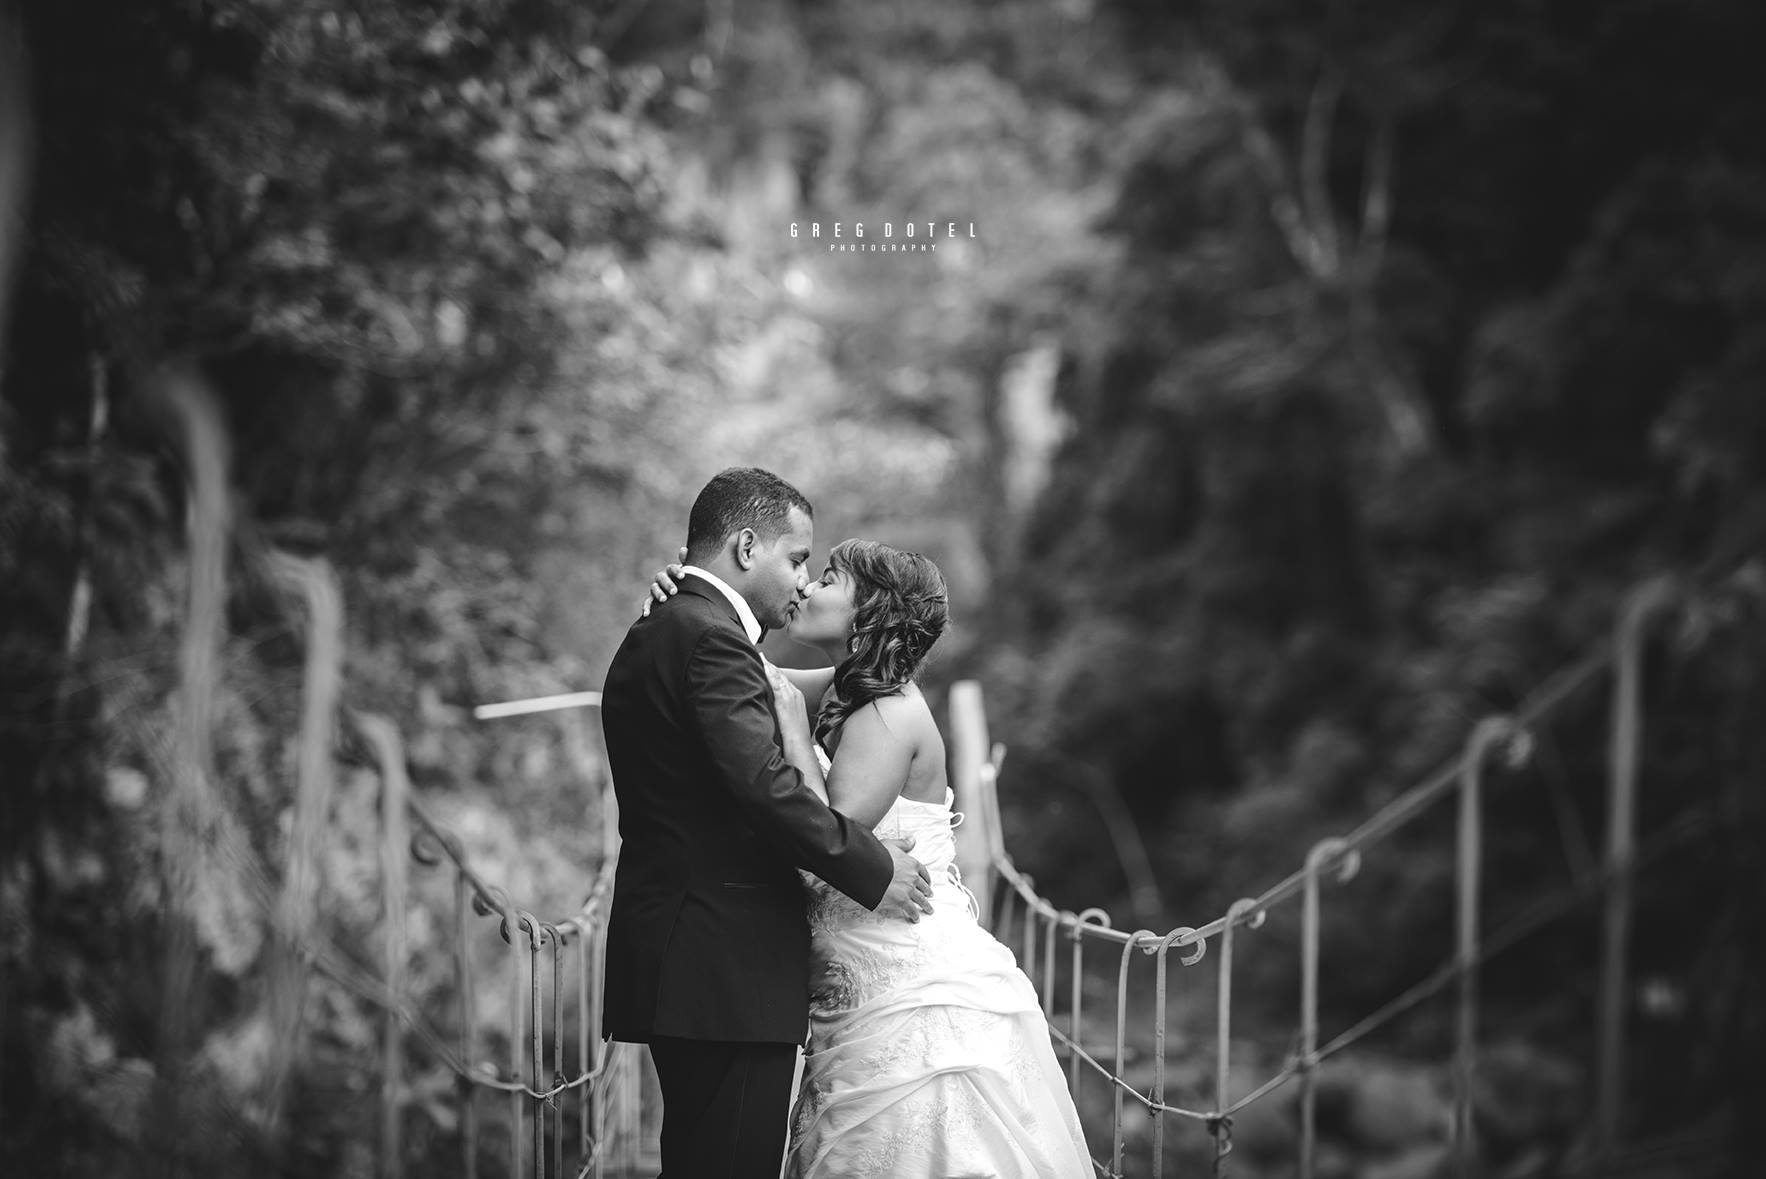 Fotografia de bodas y sesión de novios en Salto de Jimenoa de Jarabacoa, República Dominicana por el fotografo dominicano greg dotel phorography